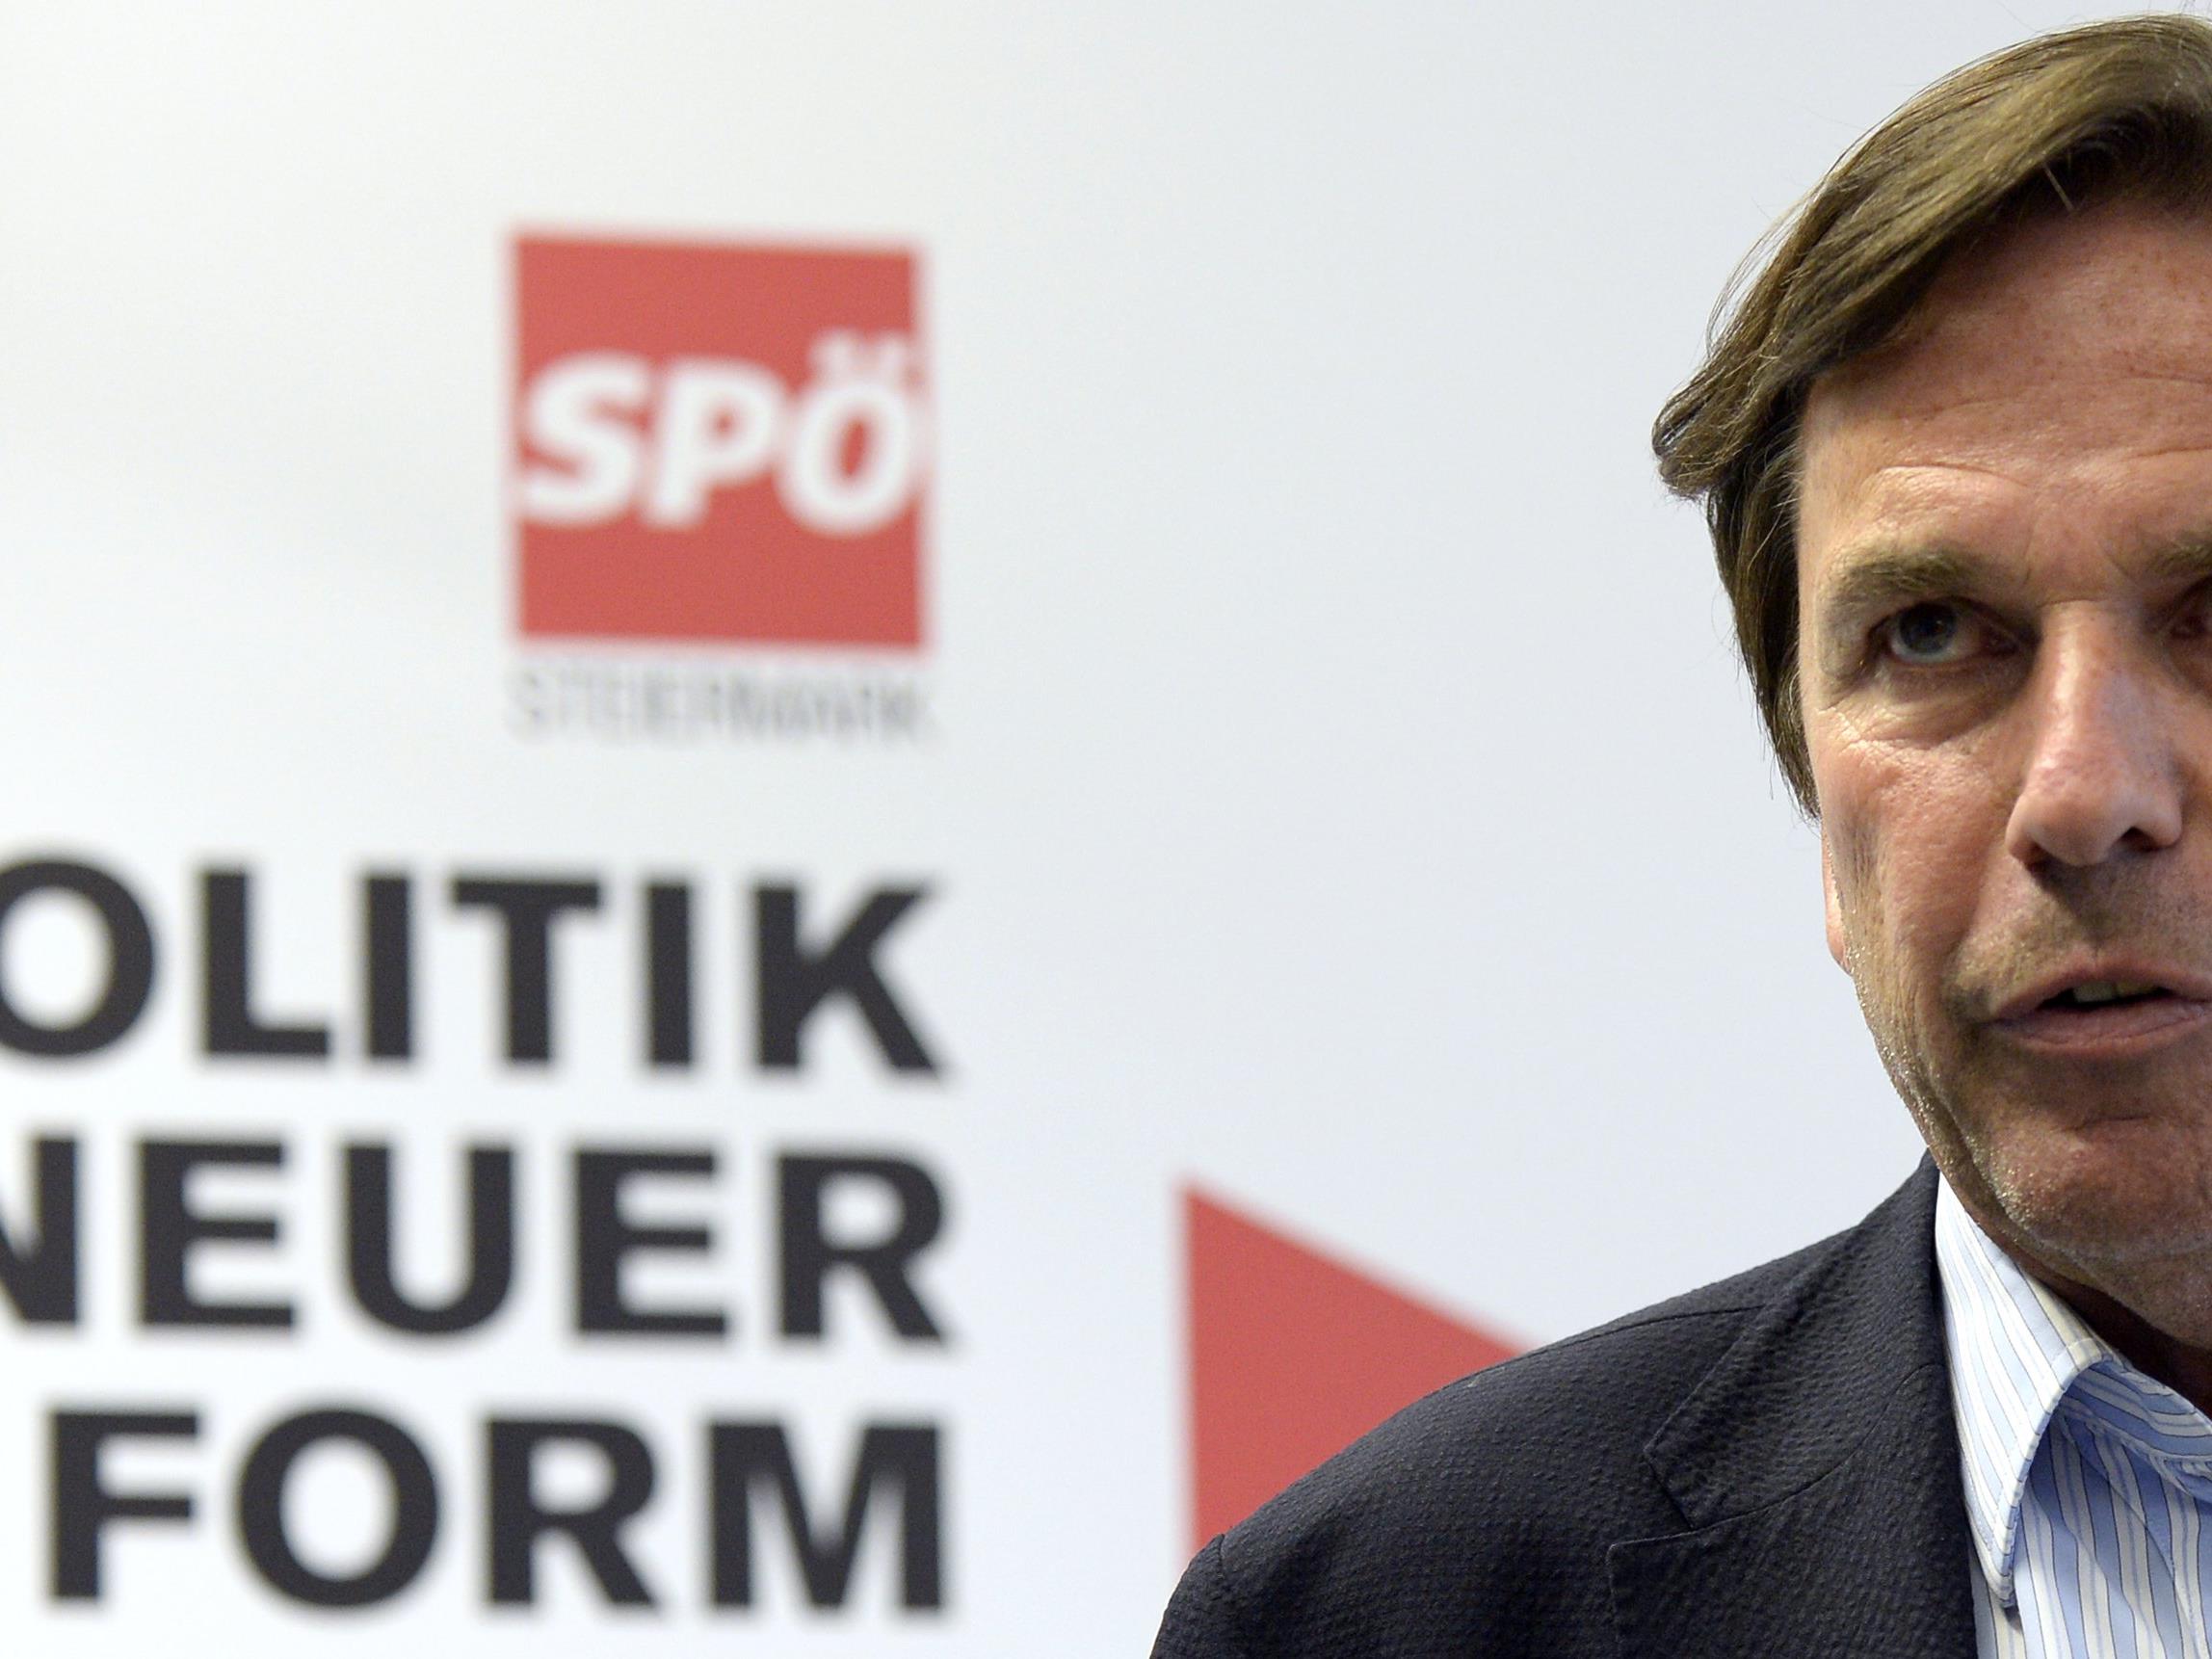 Steirischer Altlandeshauptmann appelliert an die "letzten Mutigen" in der SPÖ